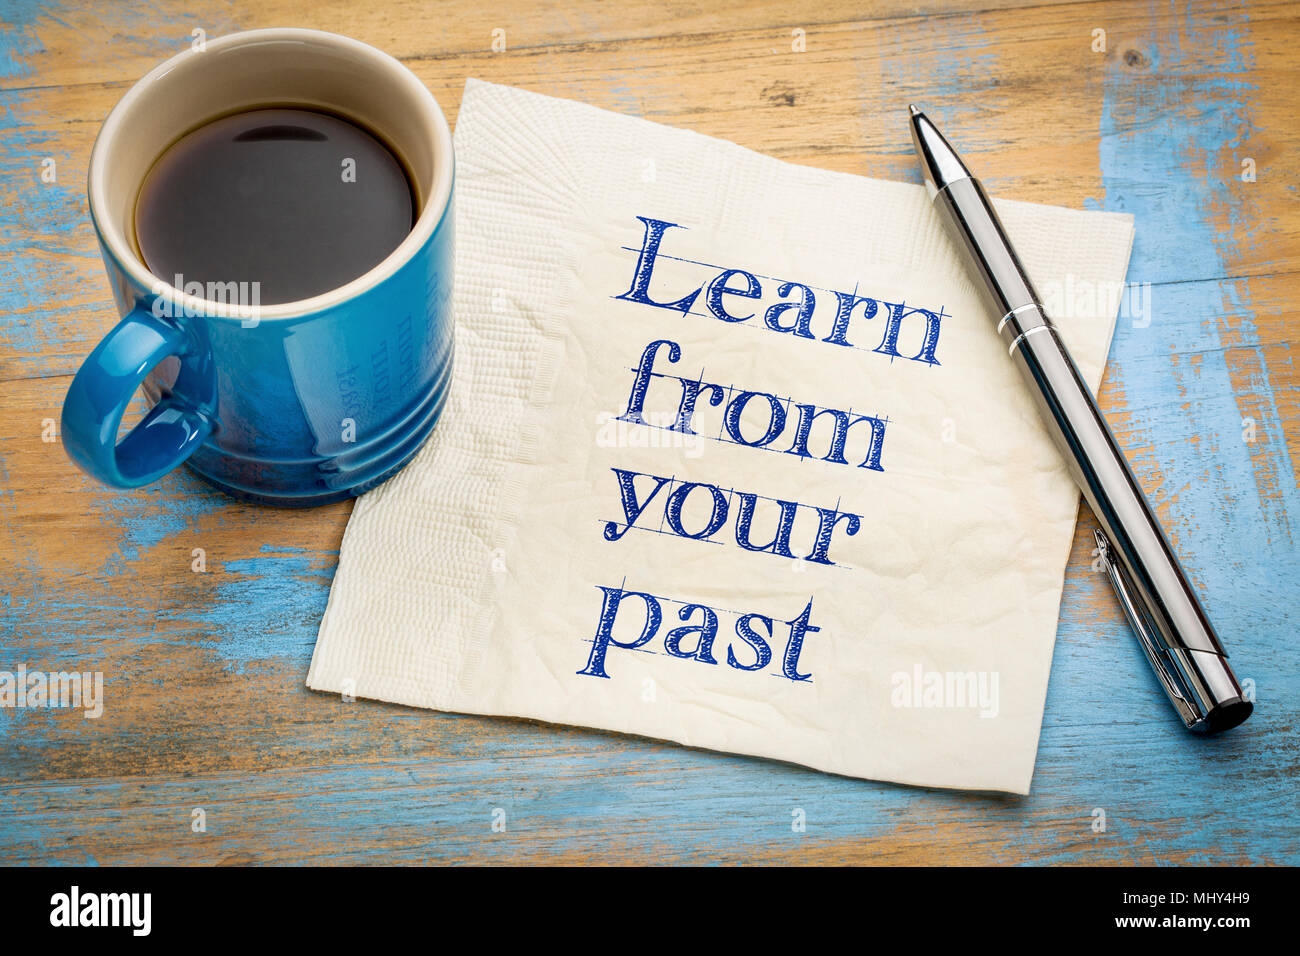 Imparate dai vostri consigli - scrittura su un tovagliolo con una tazza di caffè Foto Stock